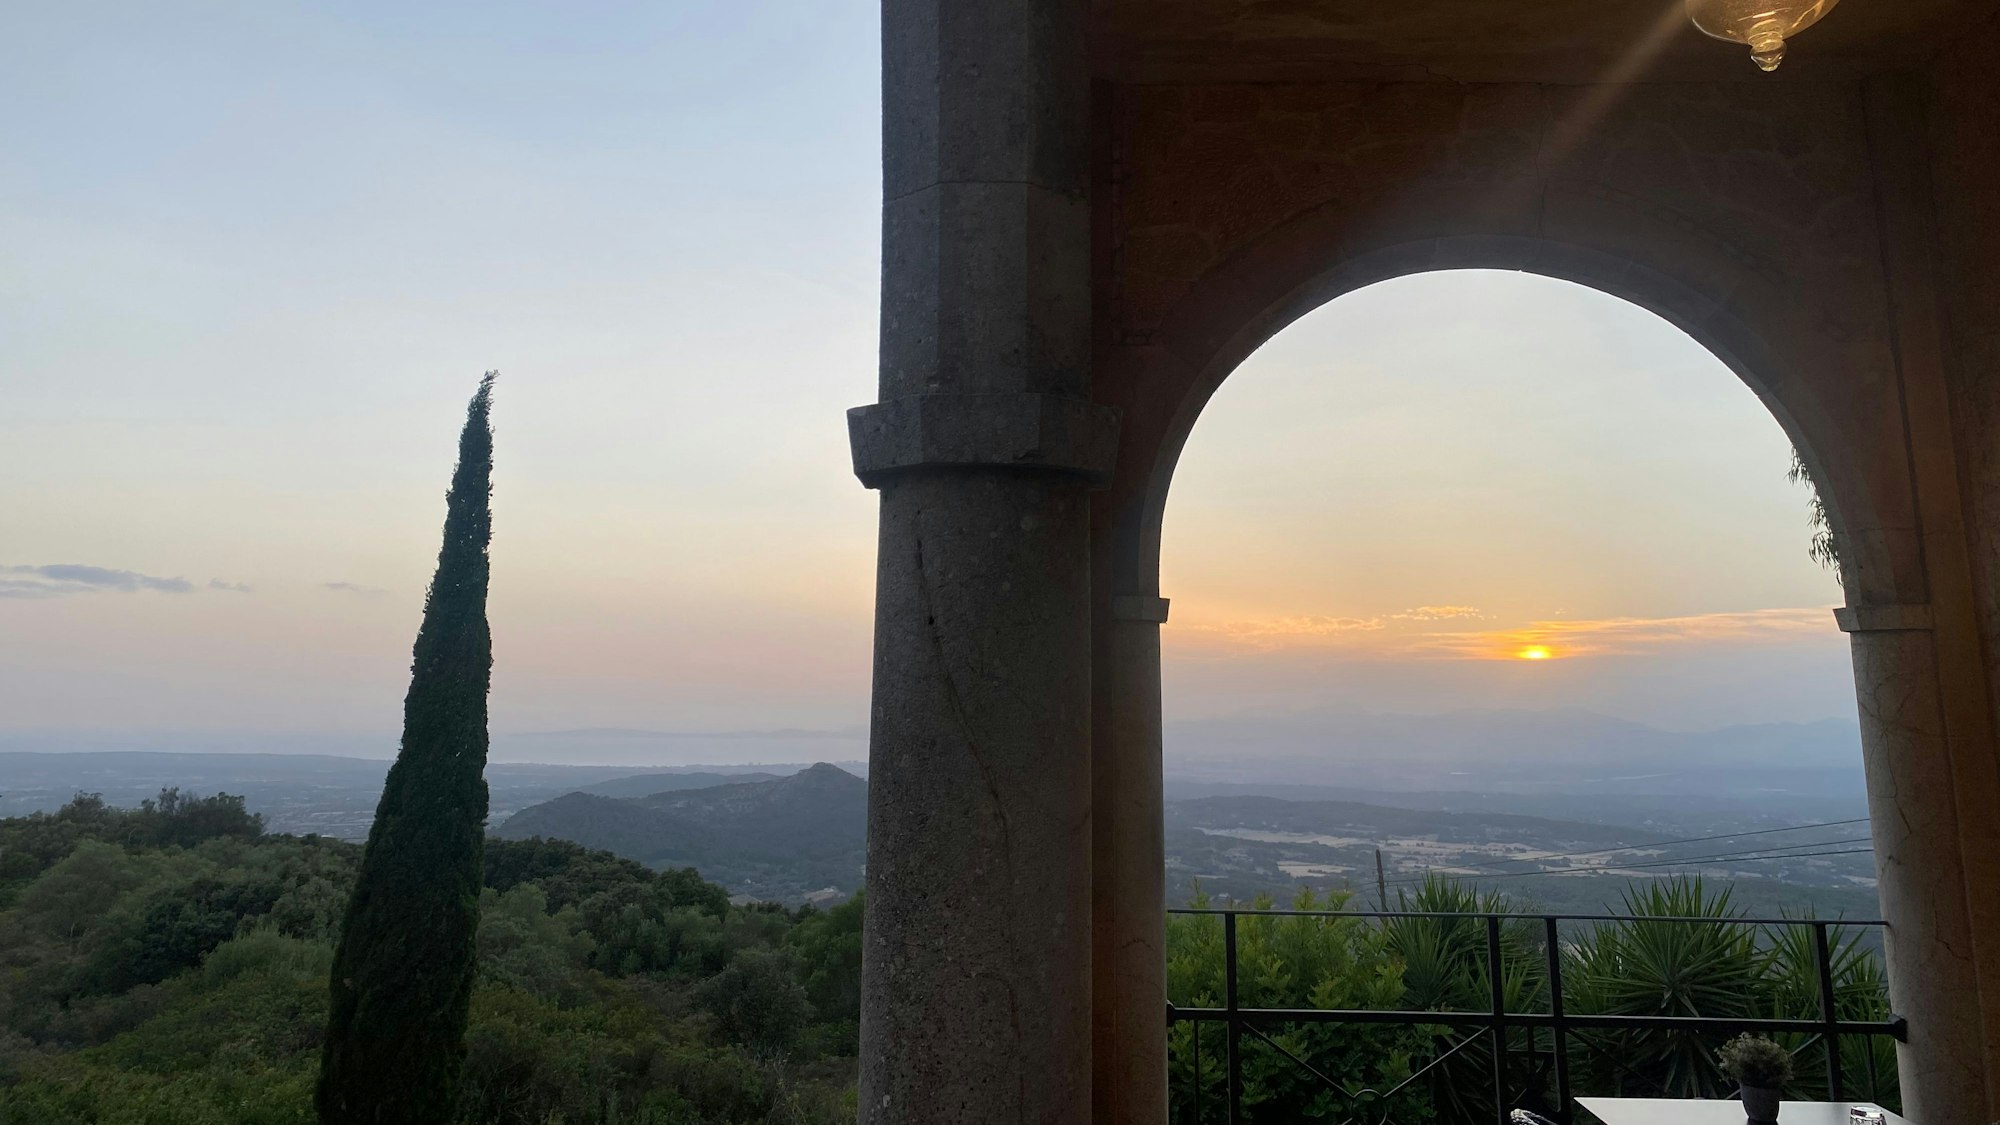 Ein malerisches Bild der untergehenden Sonne auf Mallorca, aufgenommen am Kloster Randa am 26. Juli 2022.